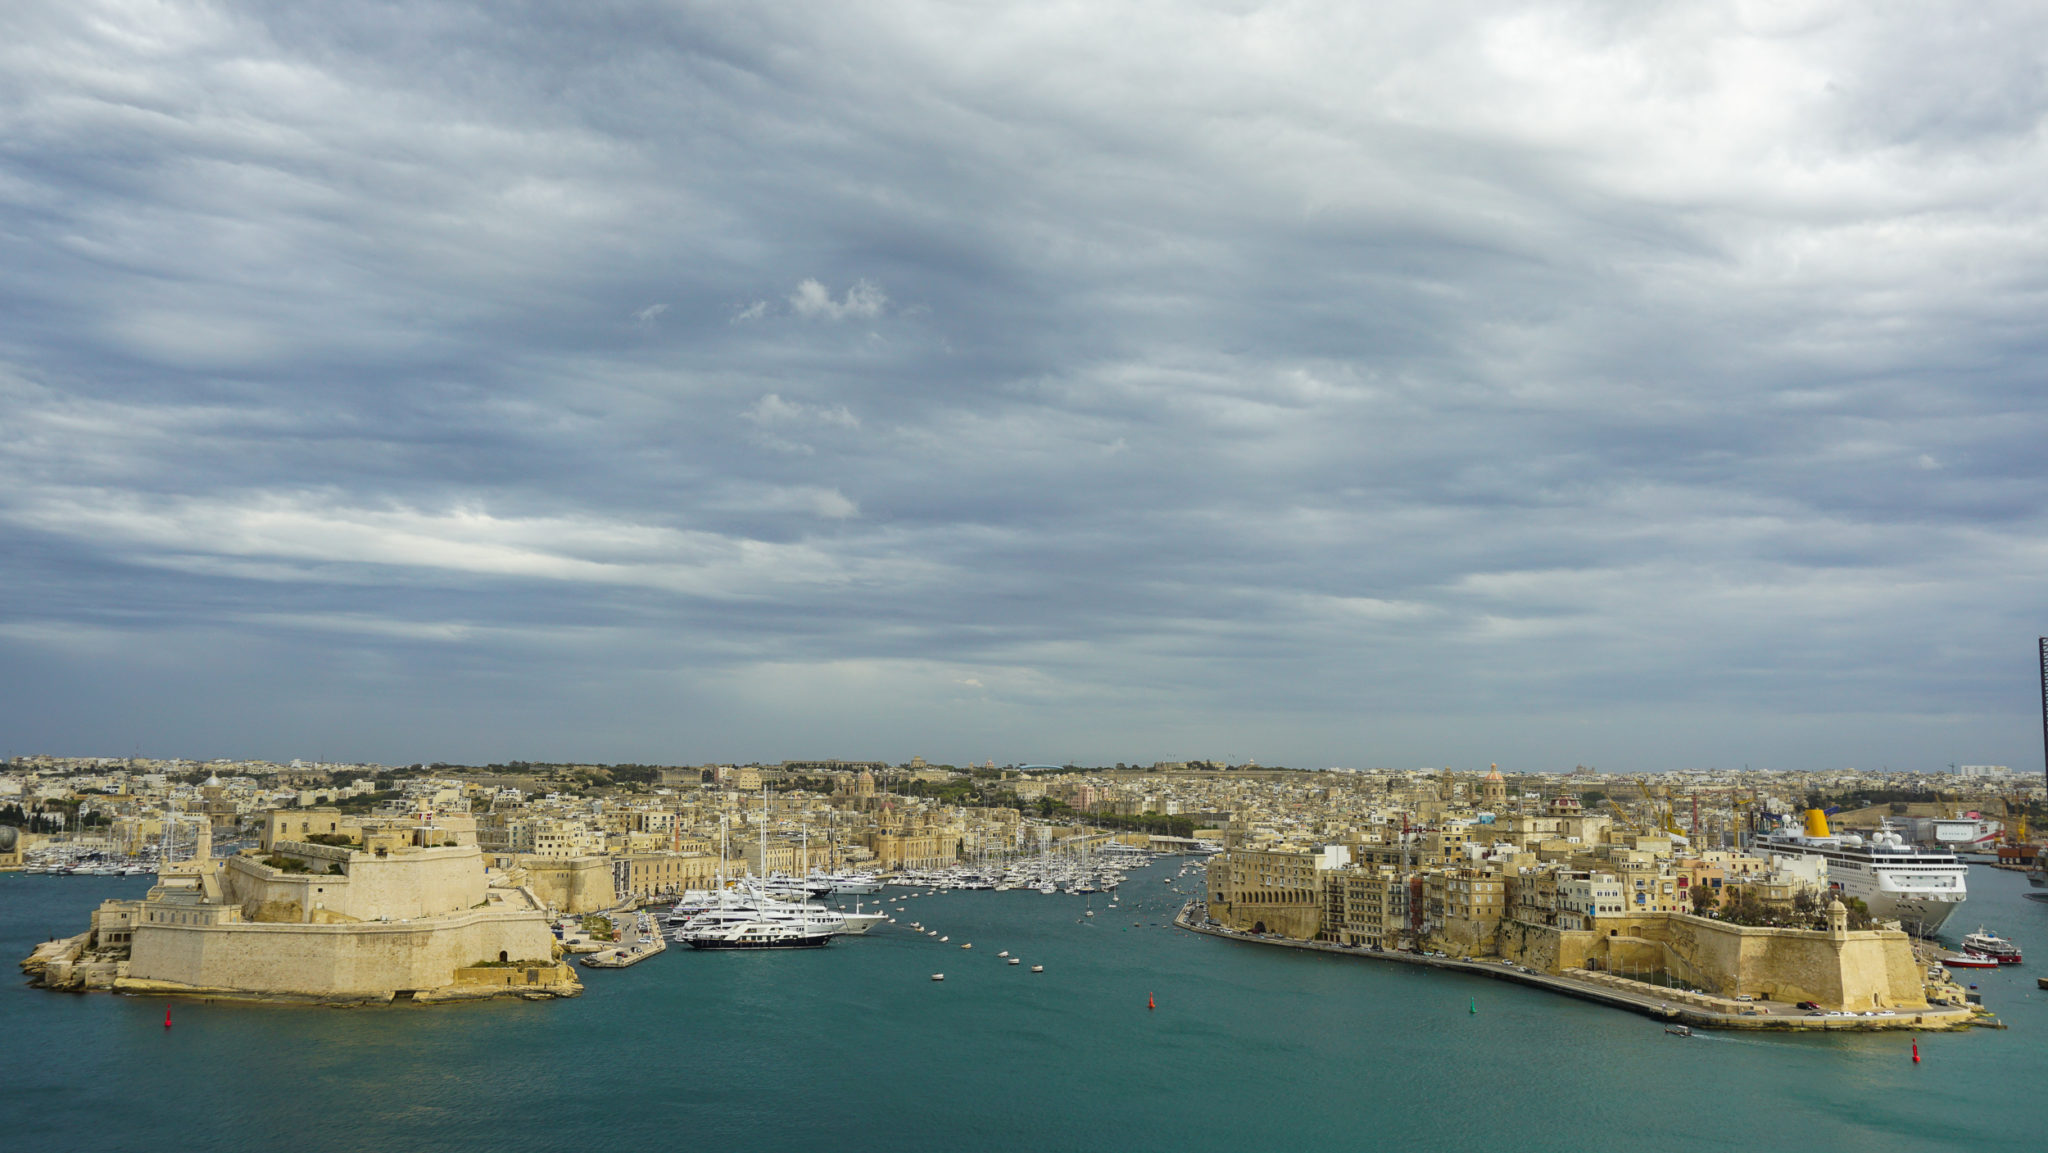 Visiting Malta